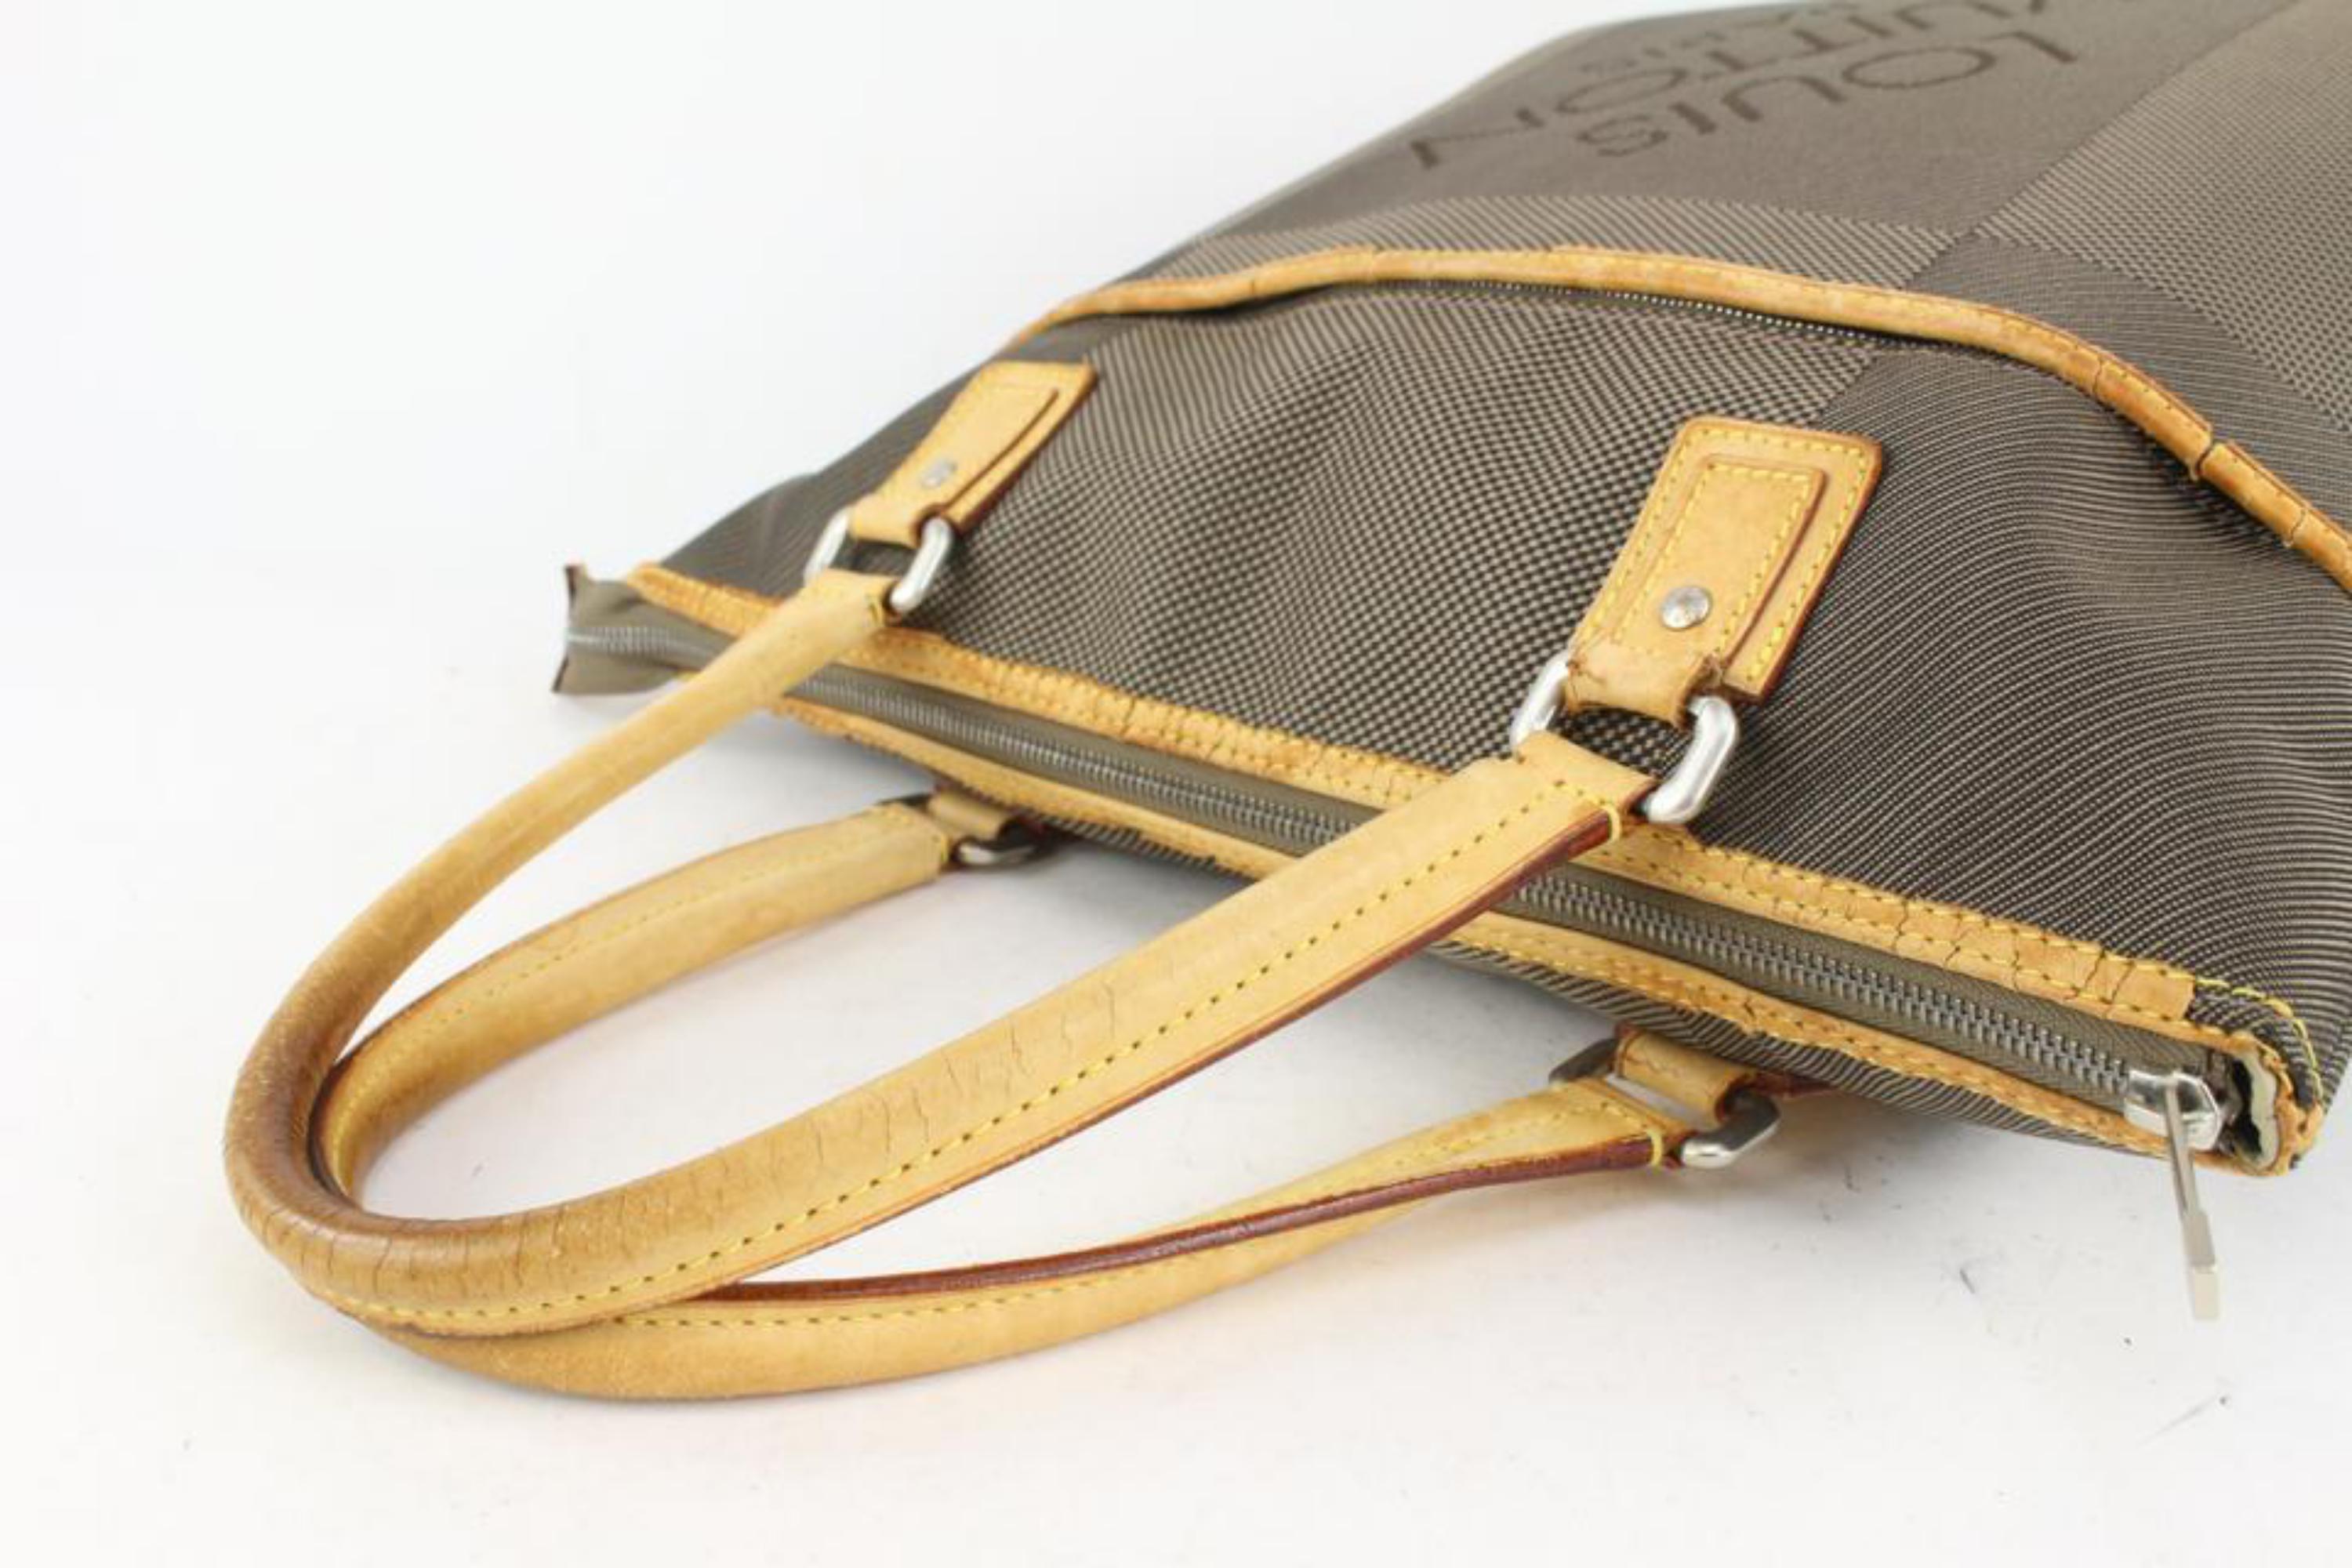 Louis Vuitton Damier Geant Cougar Tote bag 1028lv16 For Sale 3